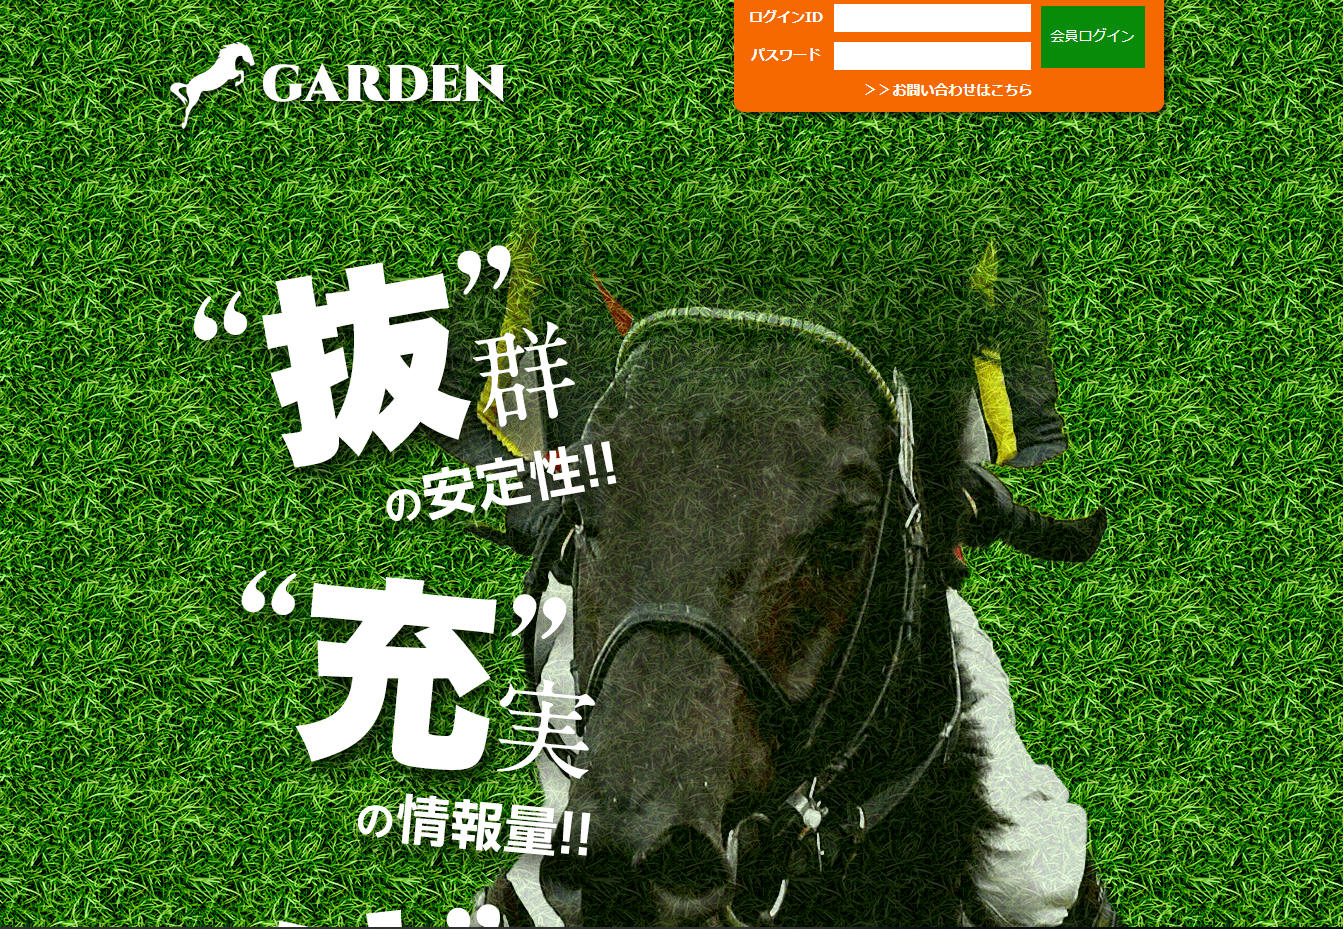 悪徳・悪質競馬予想サイト ガーデン(GARDEN)